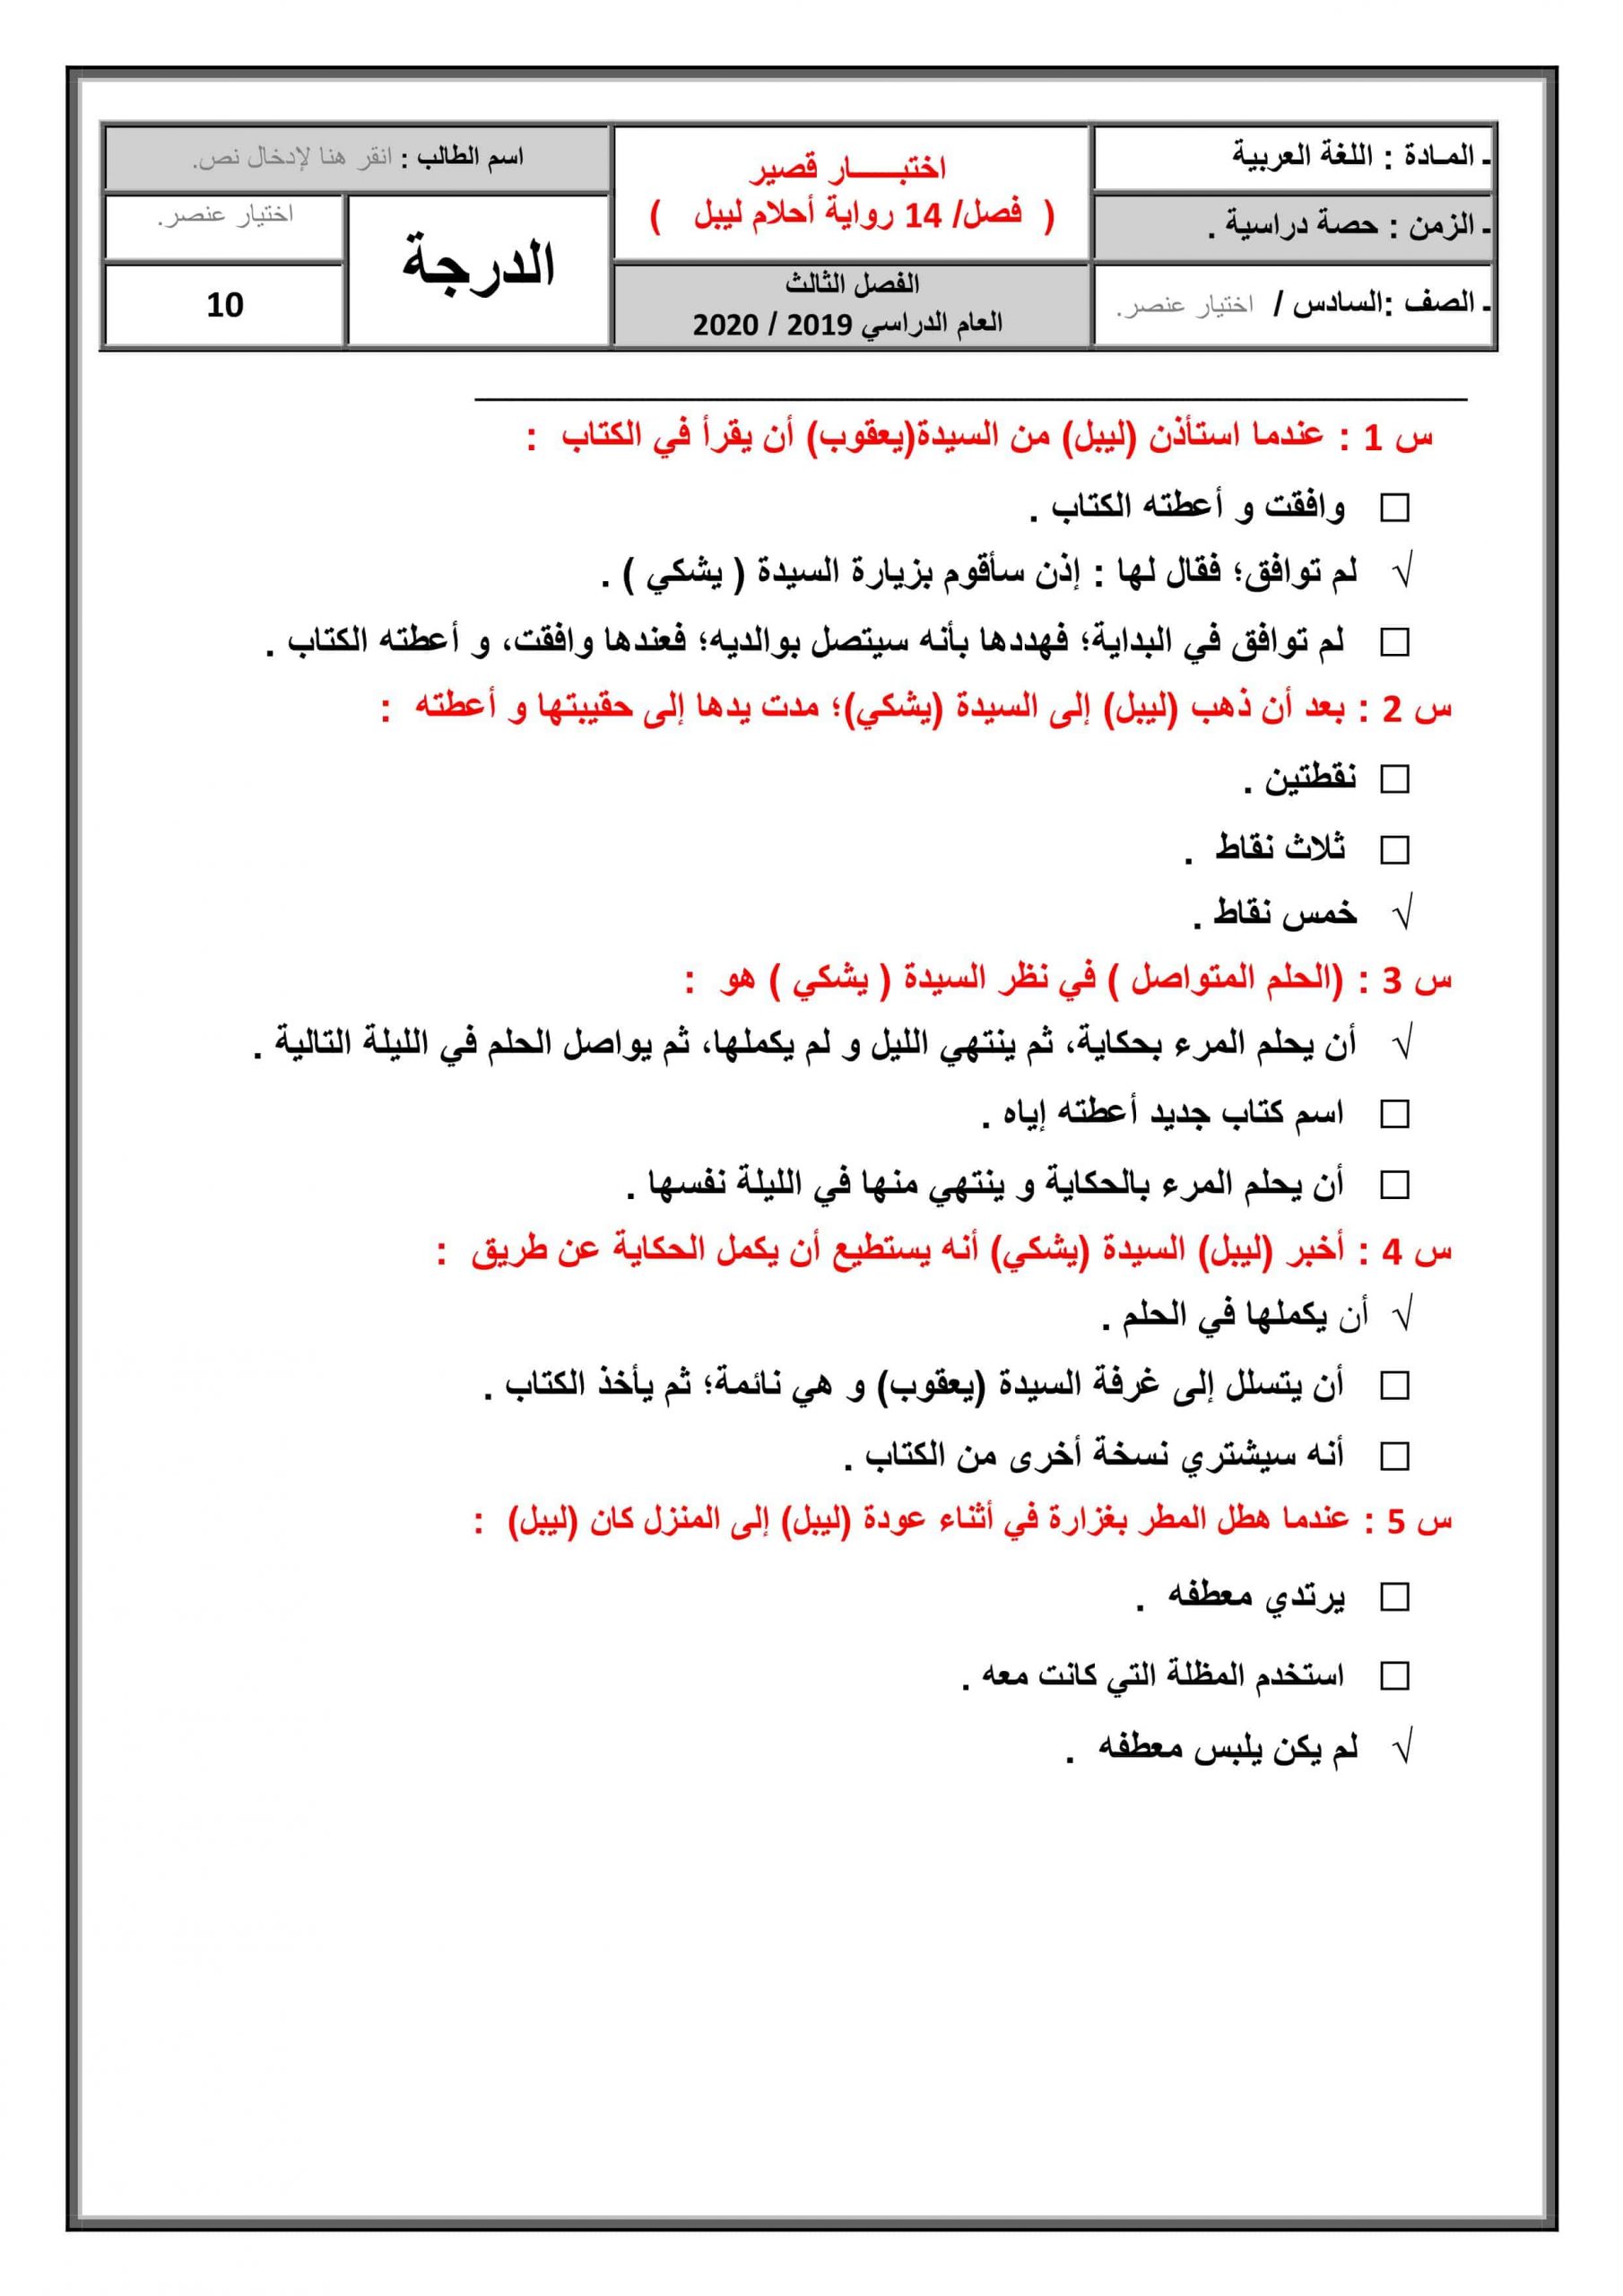 حل اختبار قصير لرواية أحلام ليبل السعيدة الفصل الرابع عشر الصف السادس مادة اللغة العربية